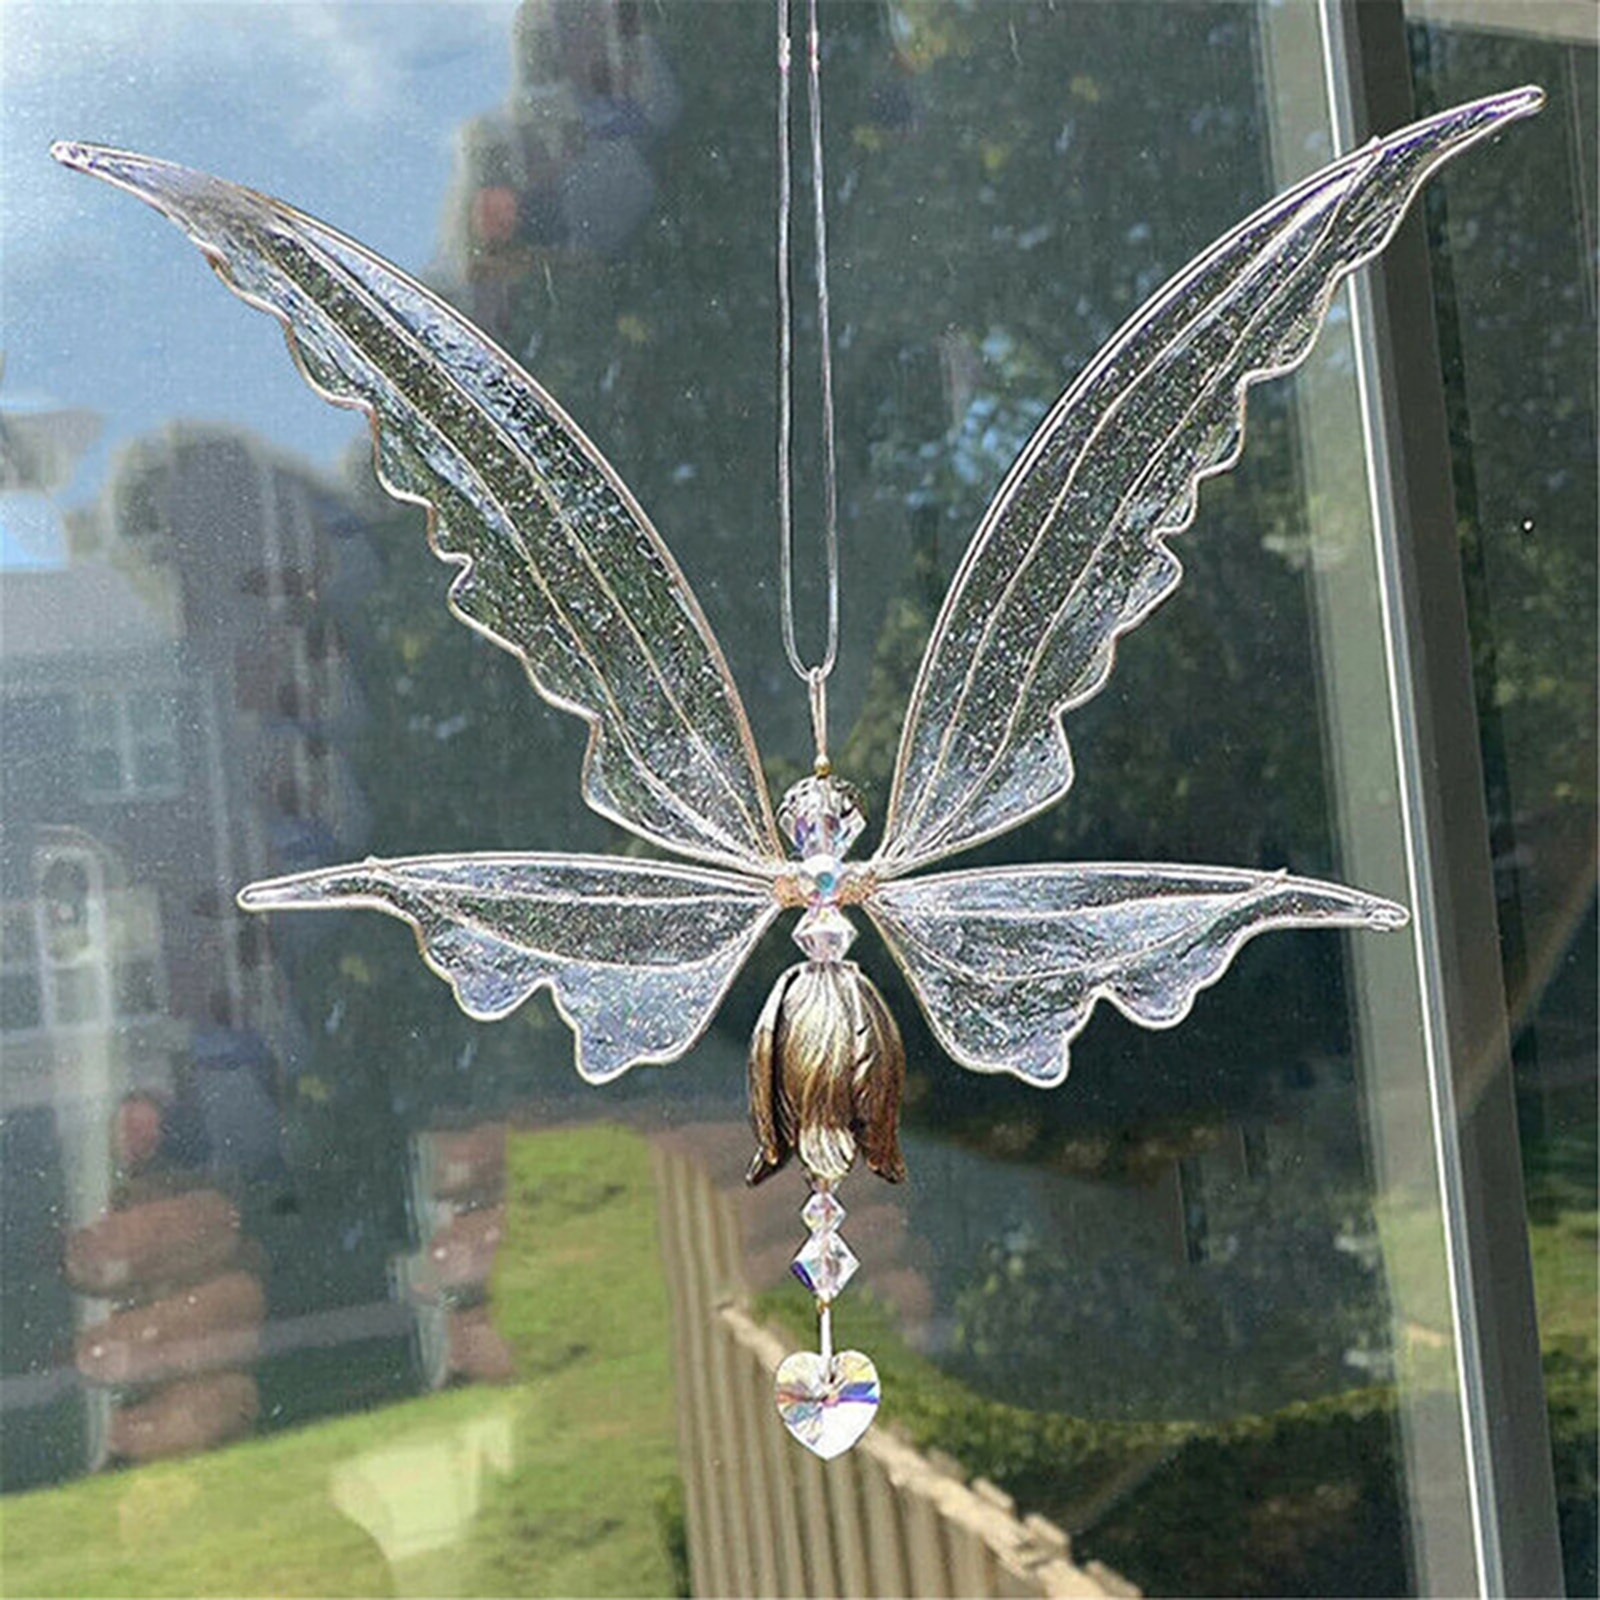 NEW! Fairy Suncatcher  - New Garden Art Metal Hanging